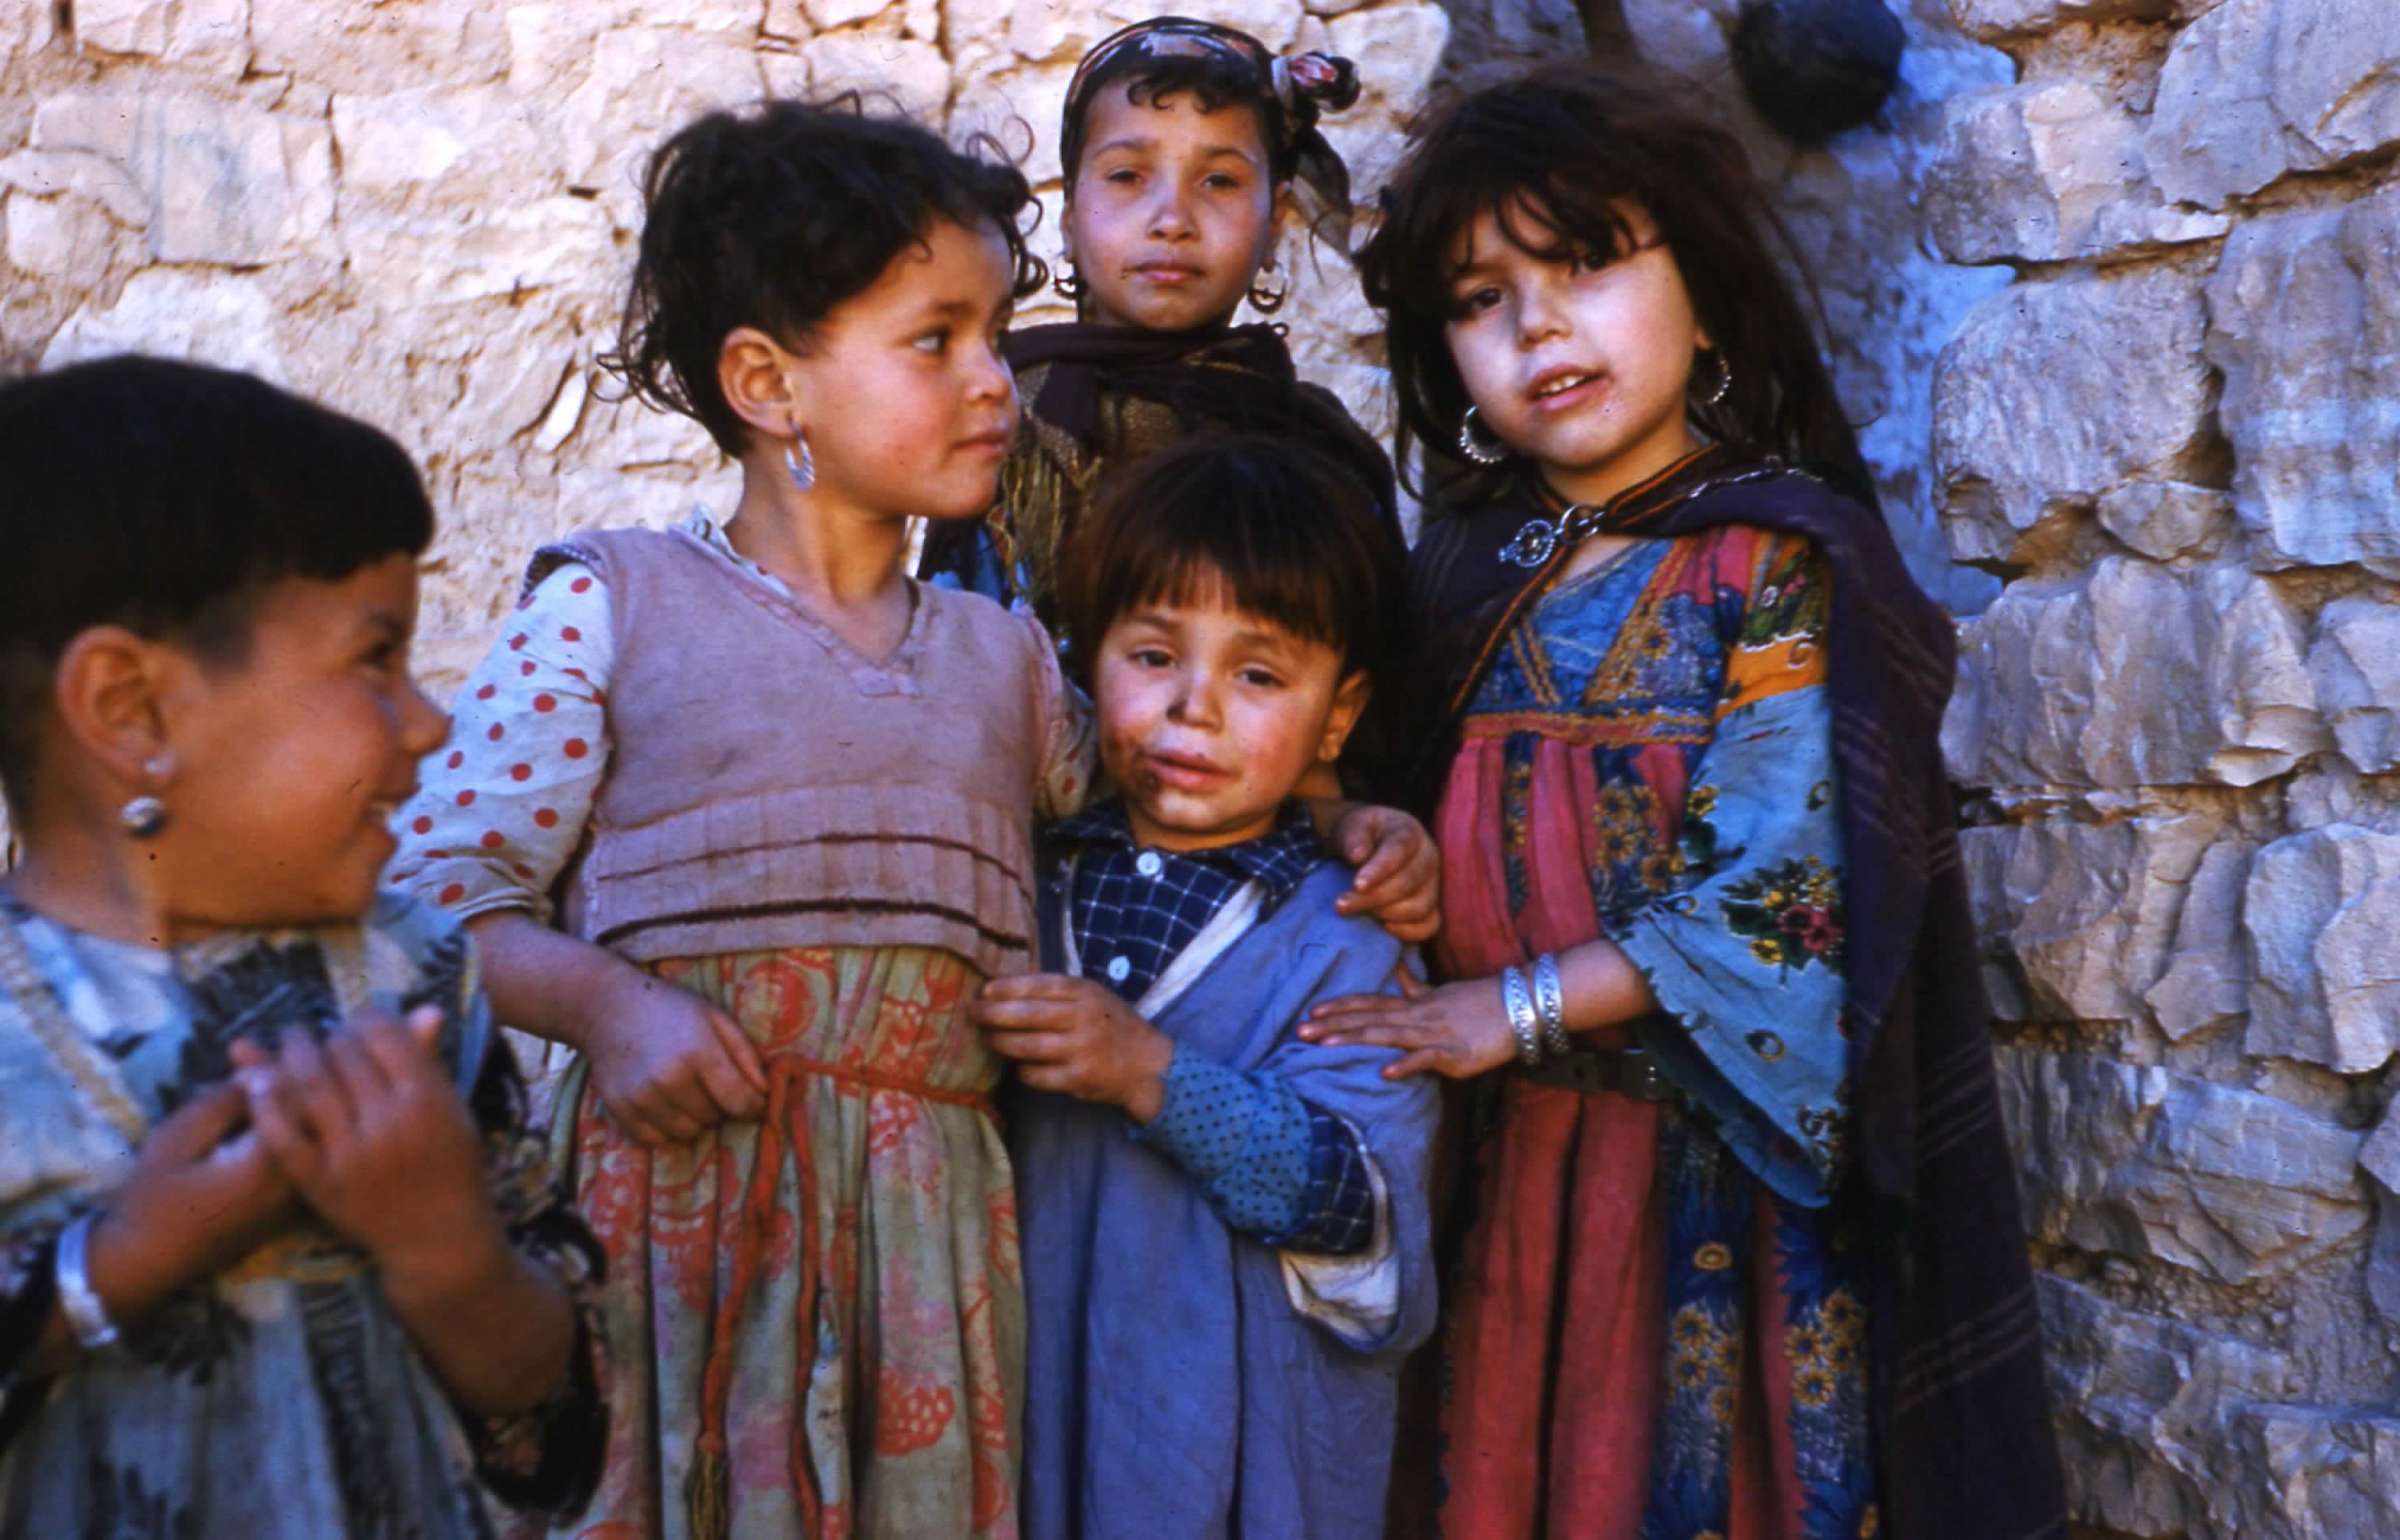 mostafa1 : enfants de taghit 1960